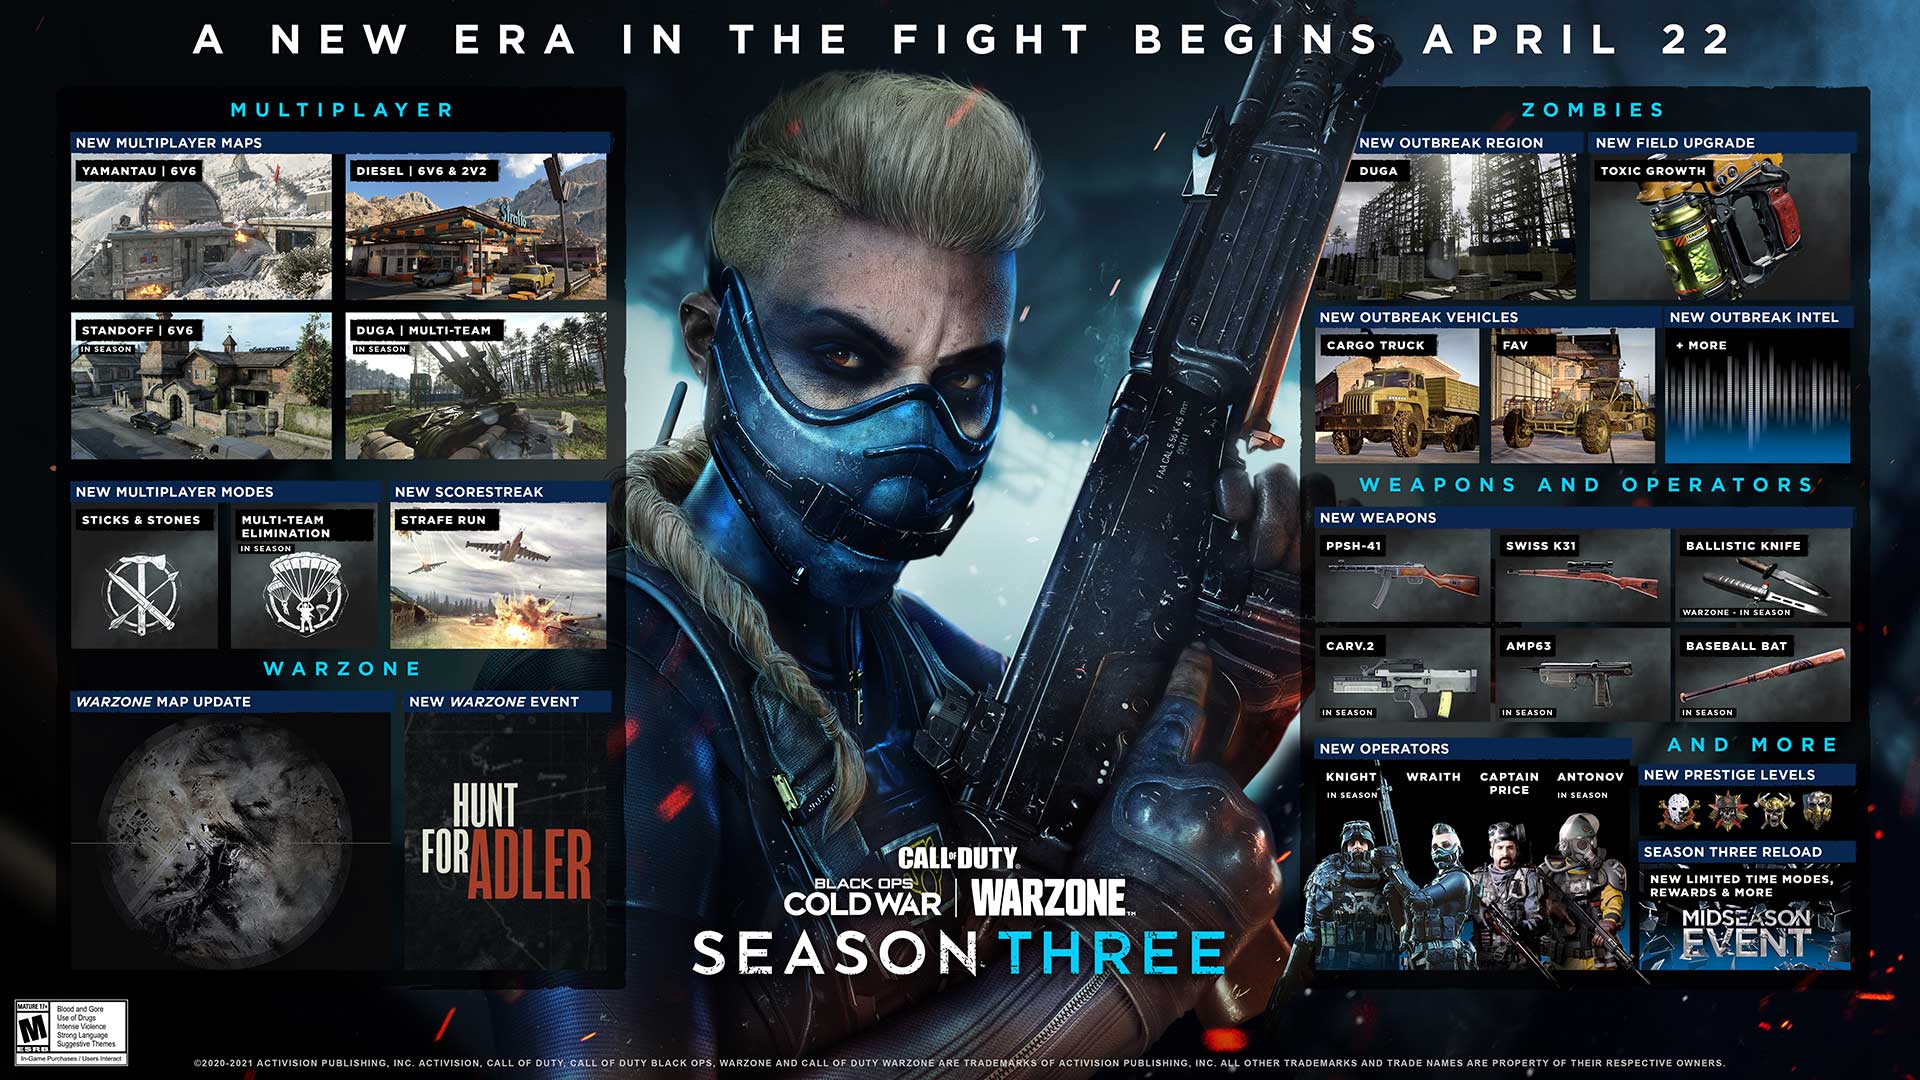 Todo lo que necesitas saber: Call of Duty: Black Ops Cold War y Warzone se calientan en la Temporada Tres, llegando en abril 22